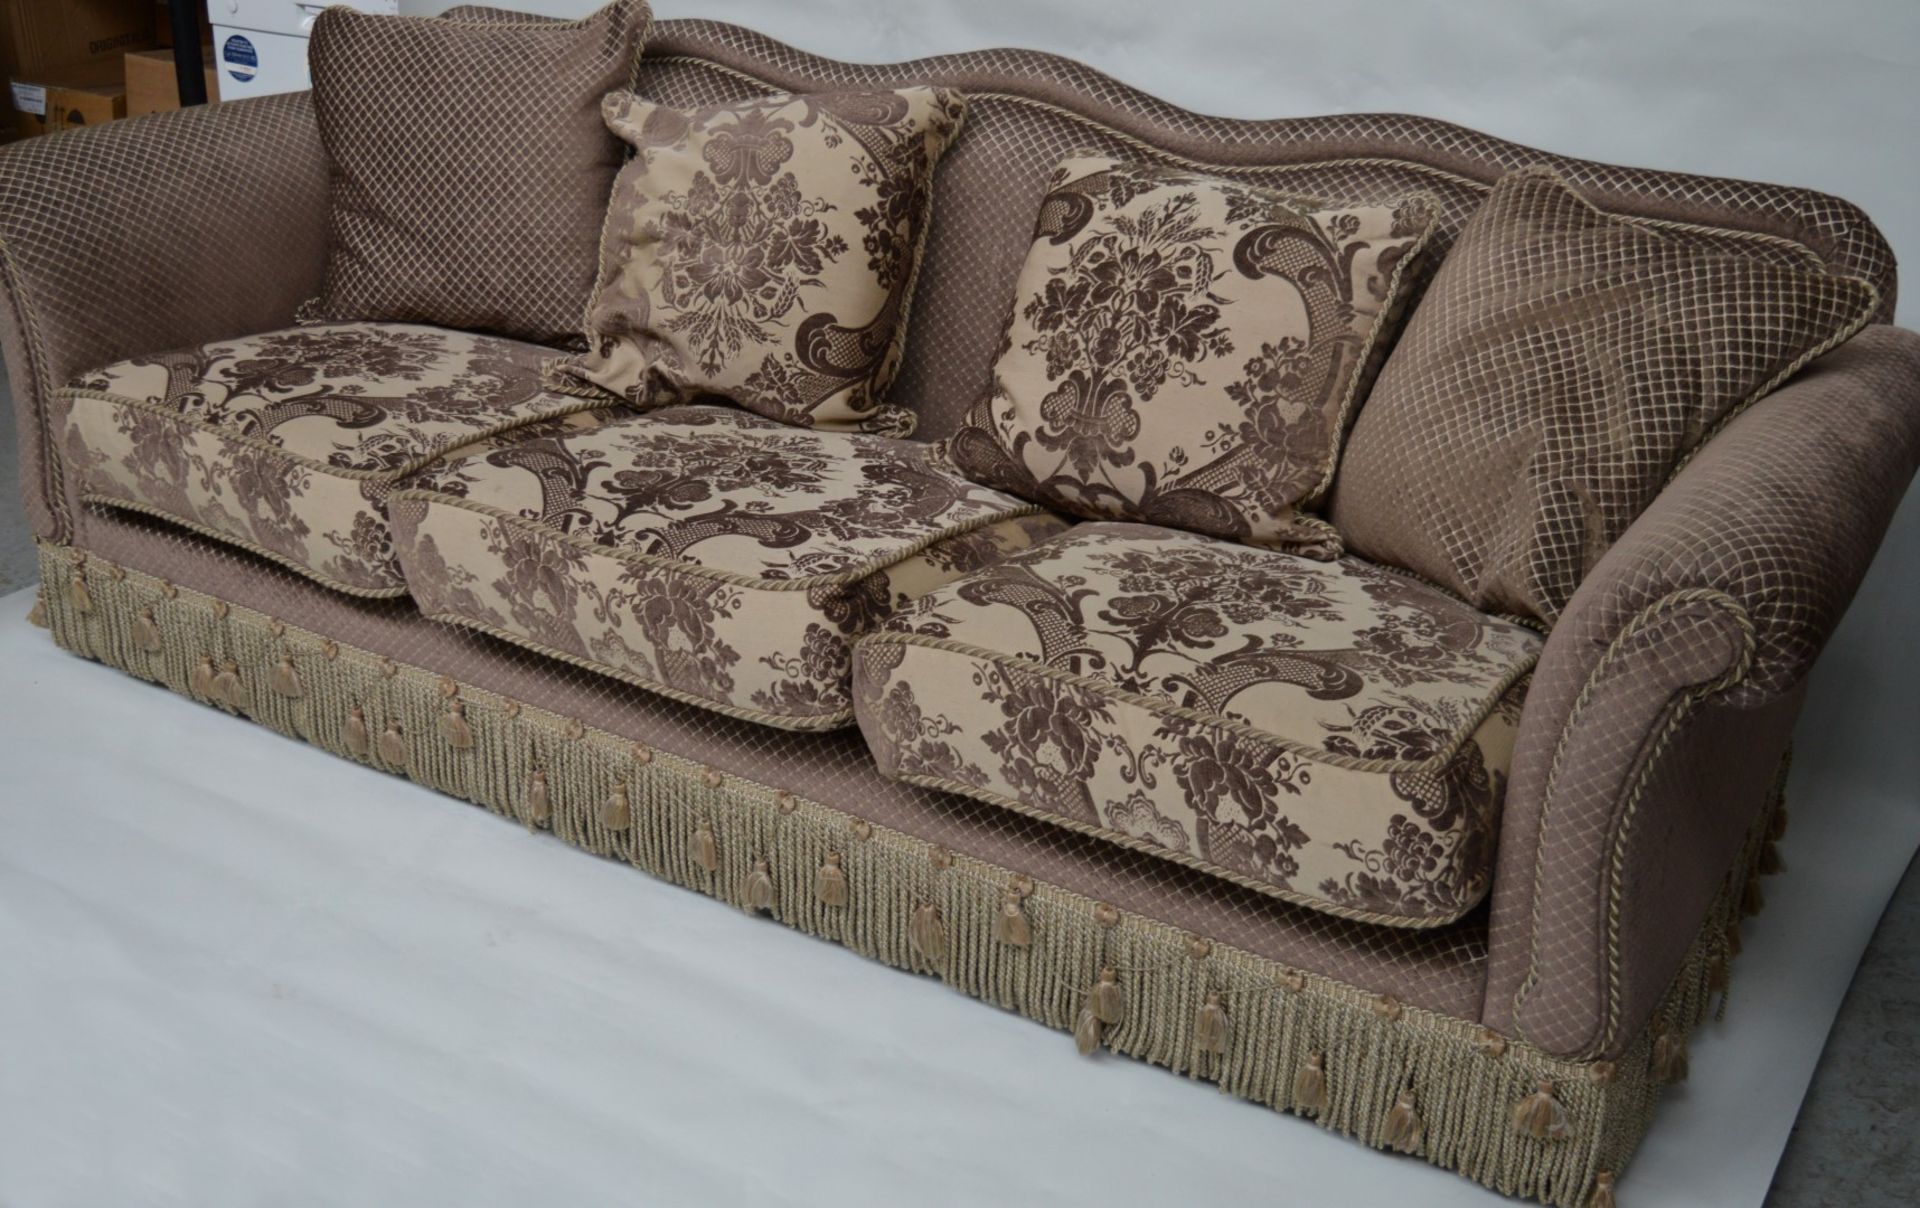 1 x Parker & Farr Abigail Special Sofa - Dimensions W240 x H87 x D89cm - Ref: 4081161 - CL087 - - Image 2 of 10